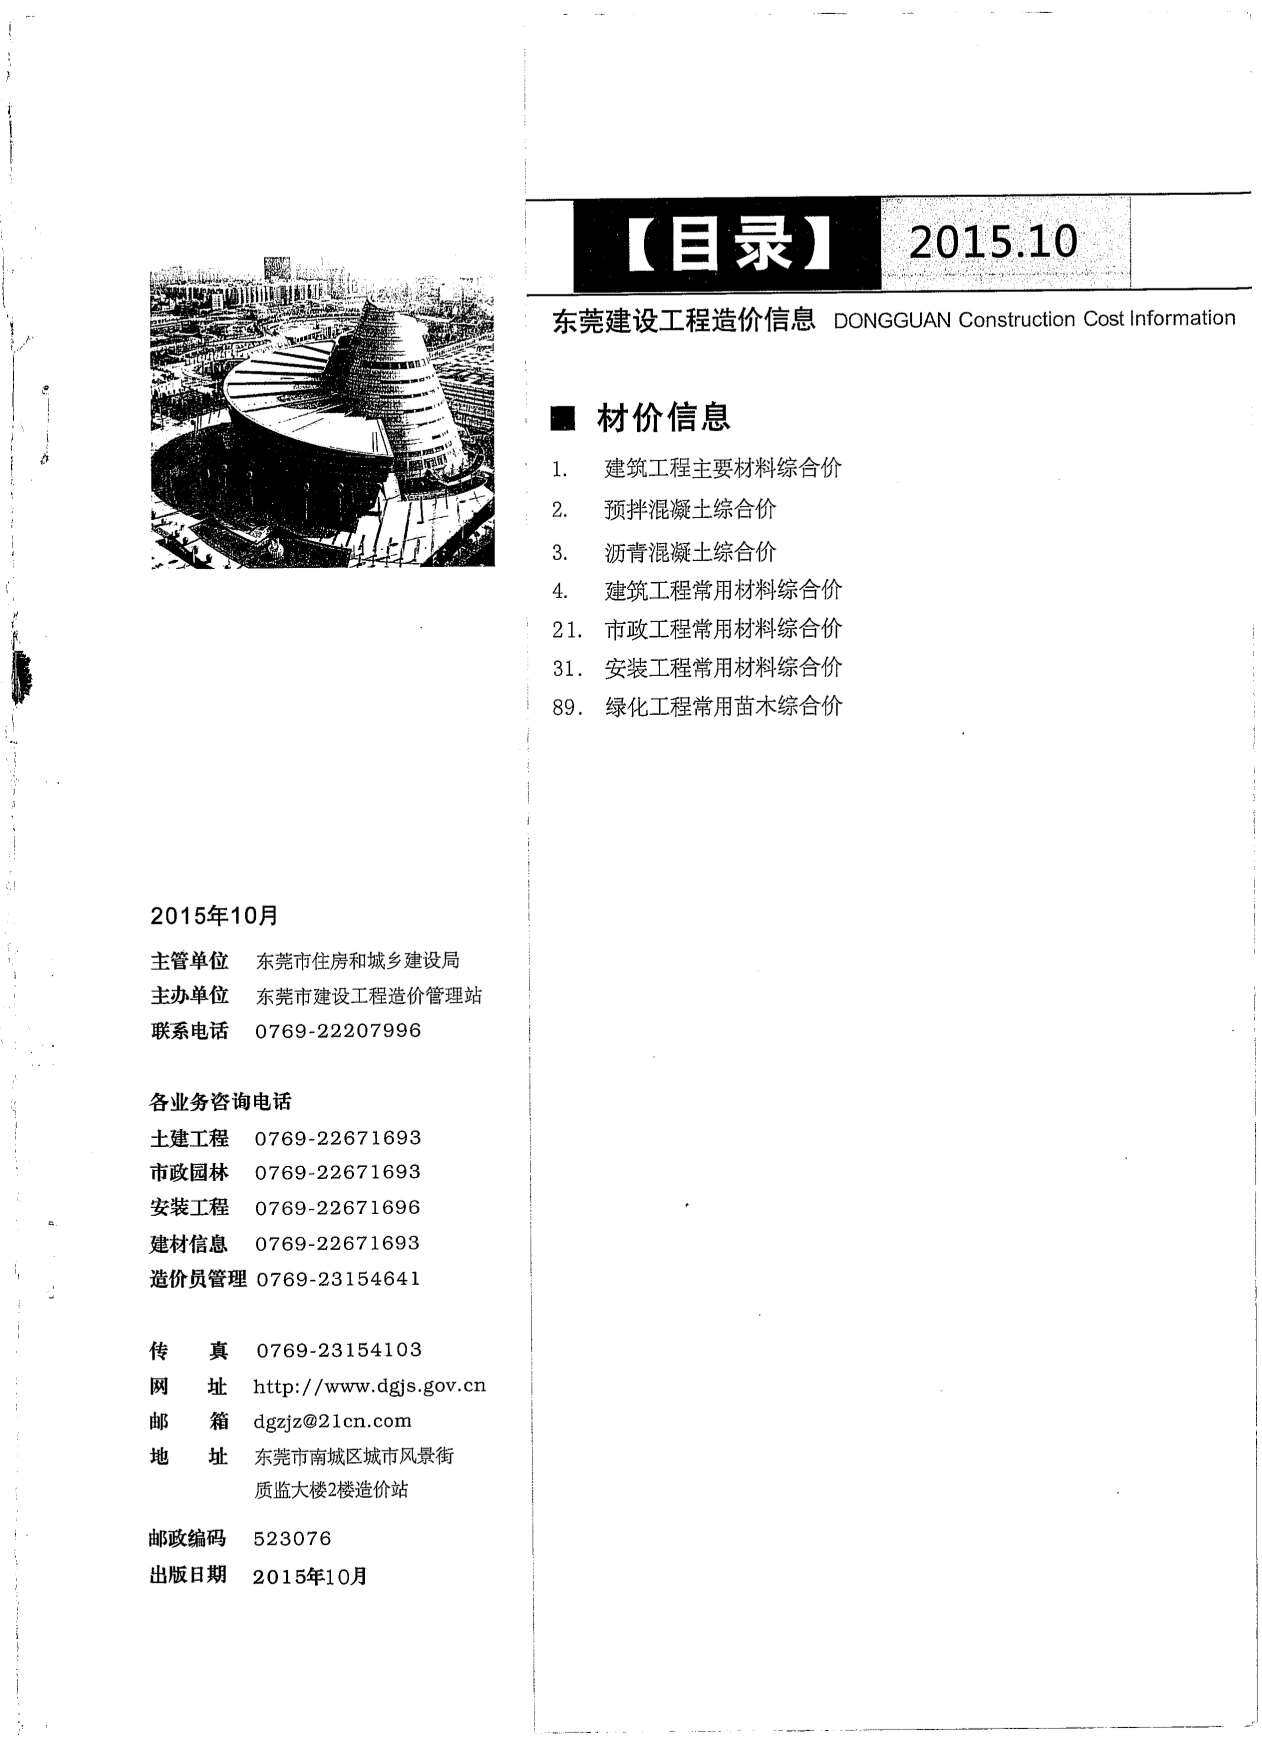 东莞市2015年10月工程造价信息期刊